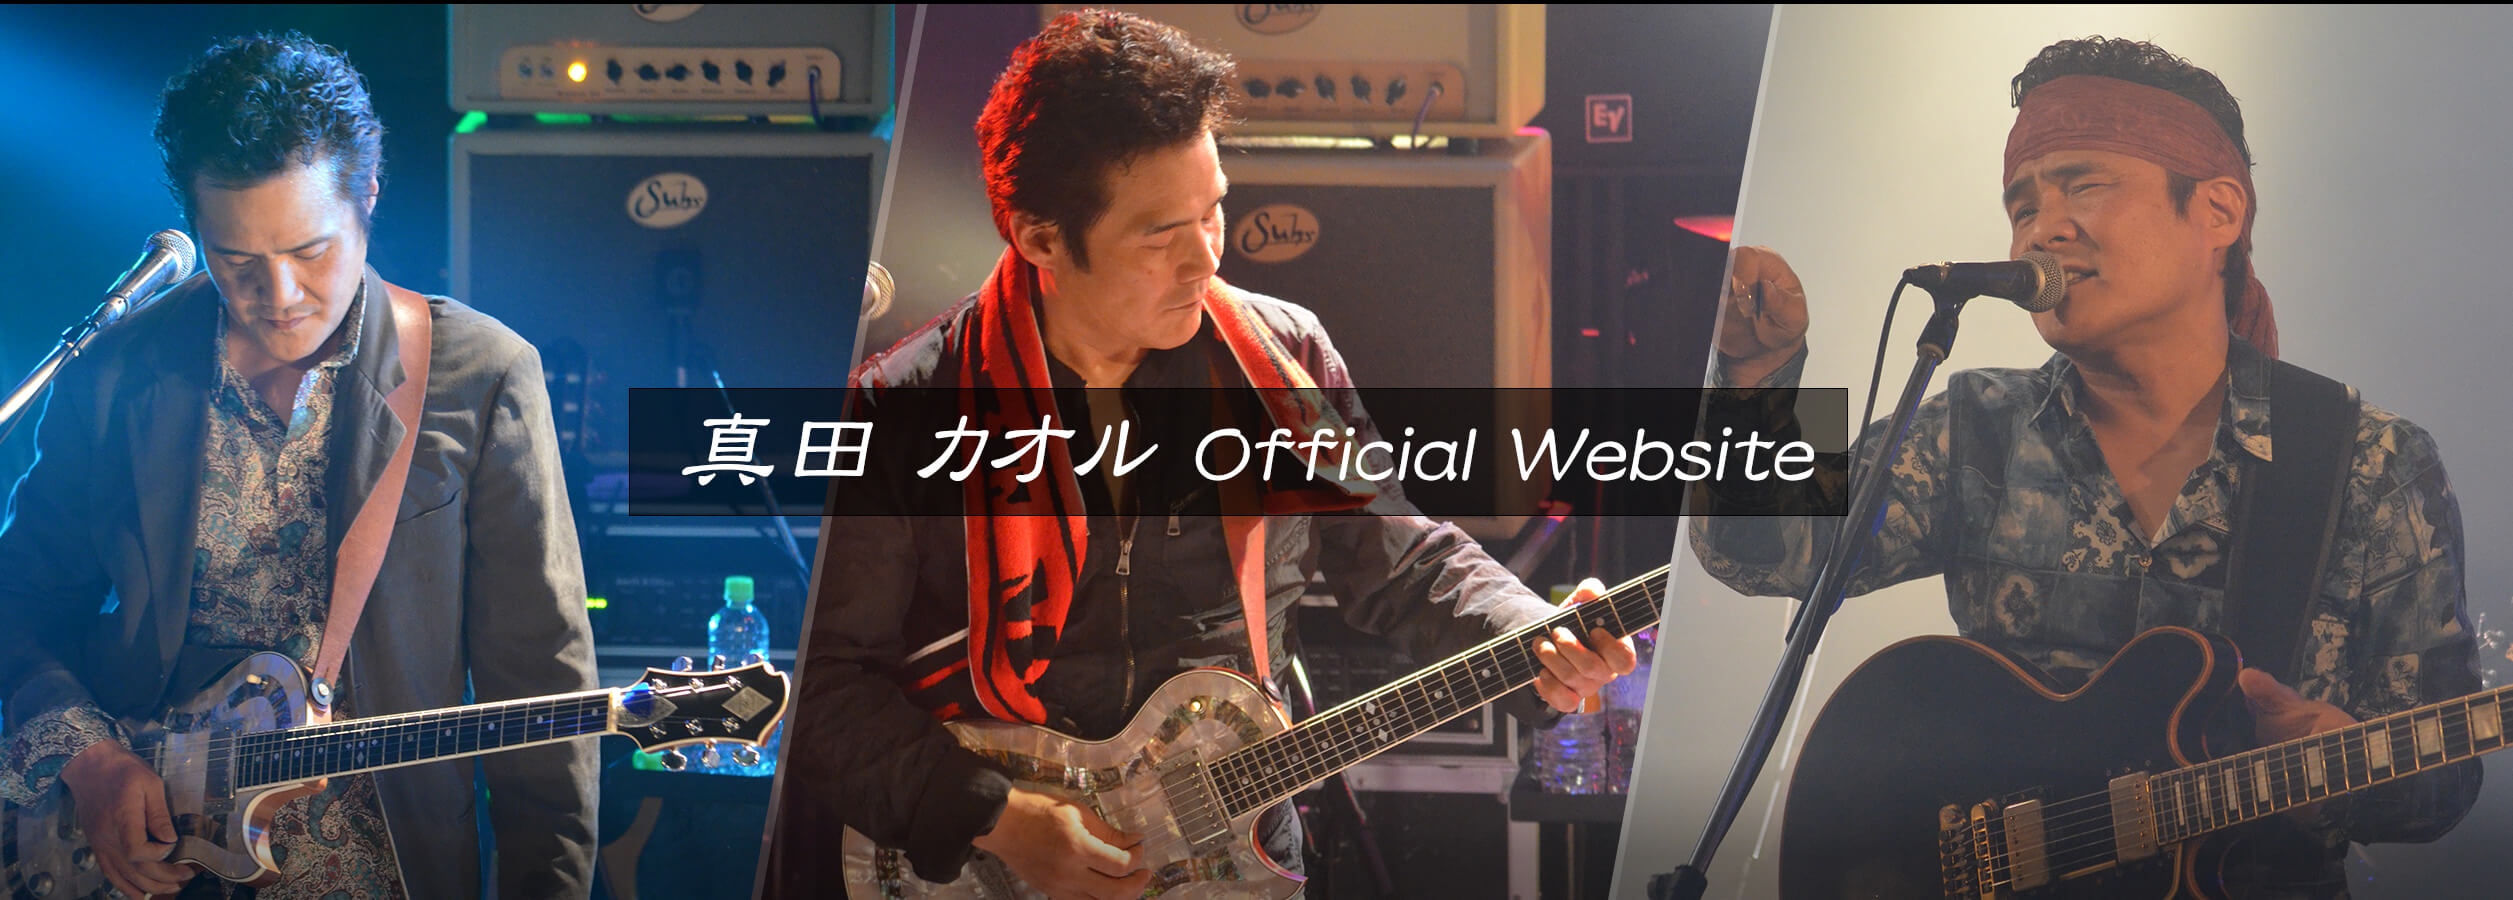 真田カオル Official Website